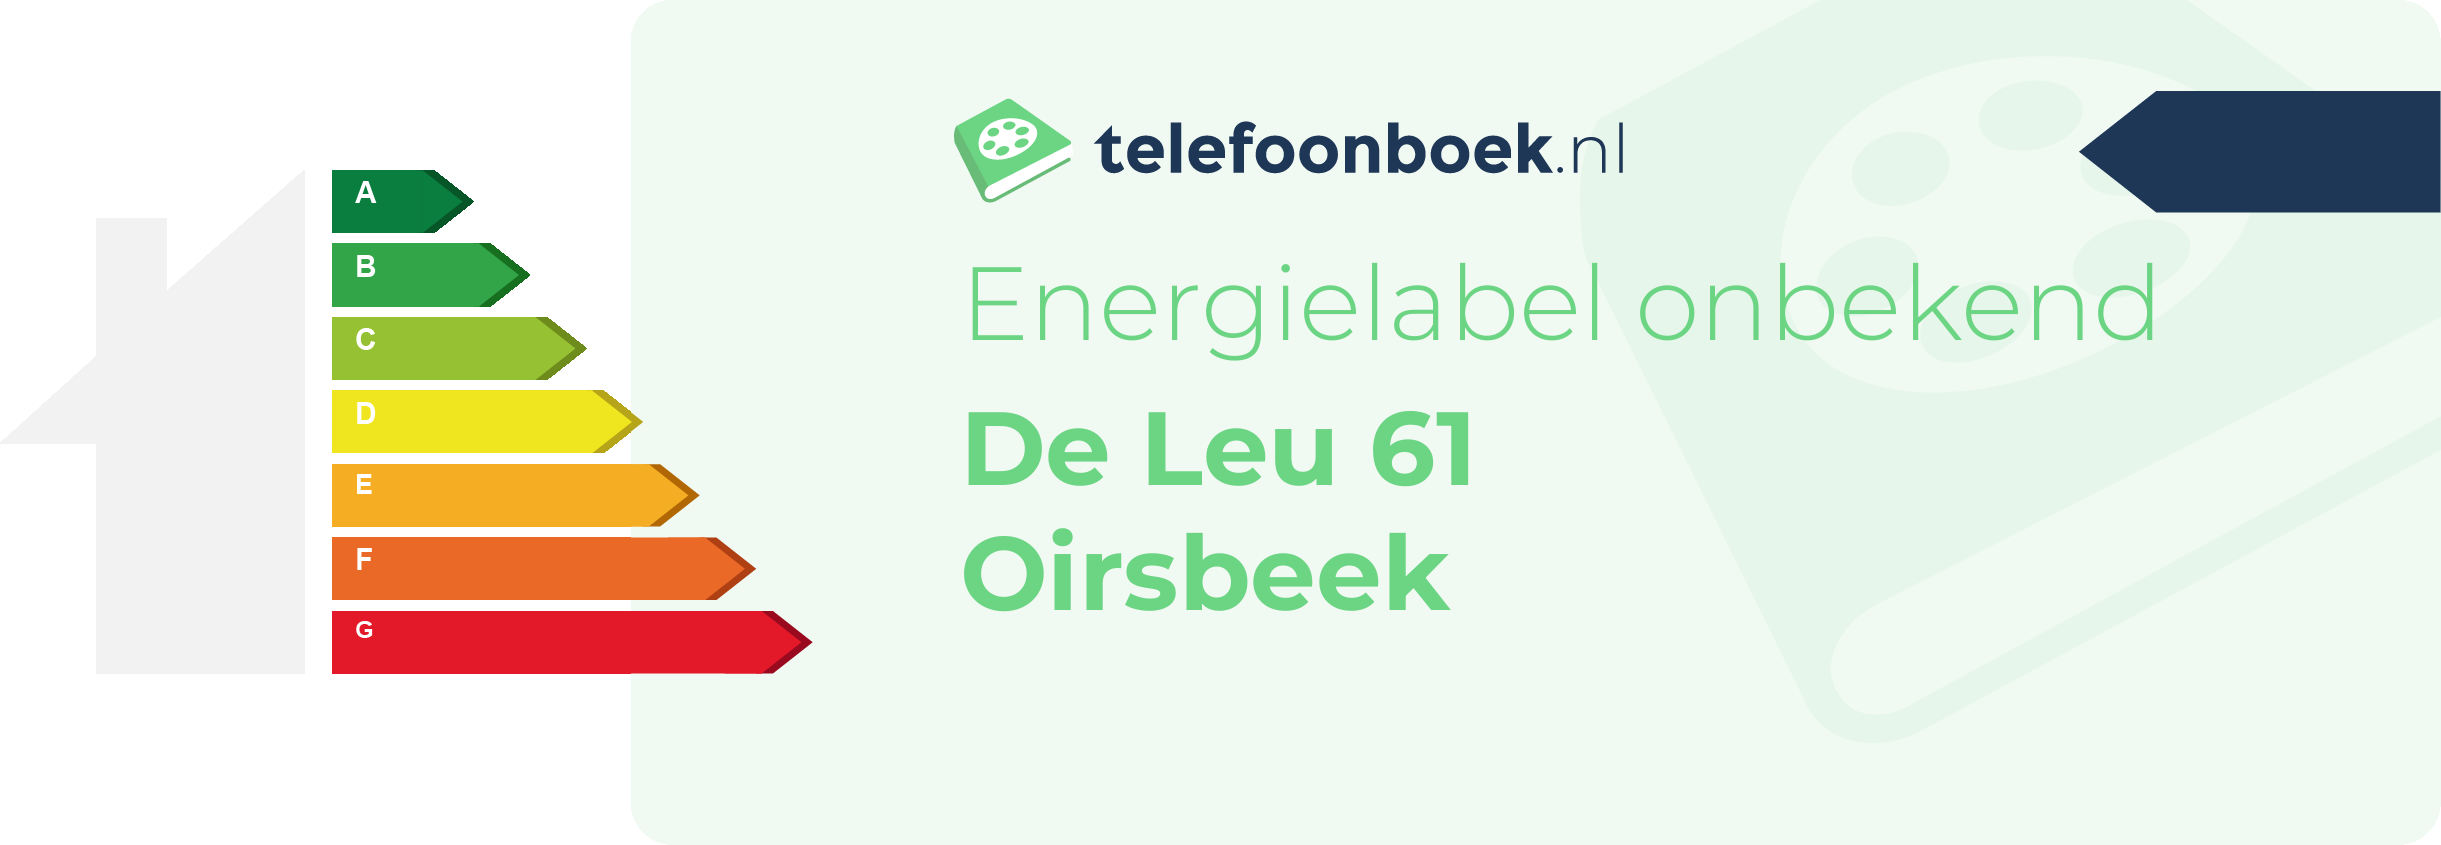 Energielabel De Leu 61 Oirsbeek